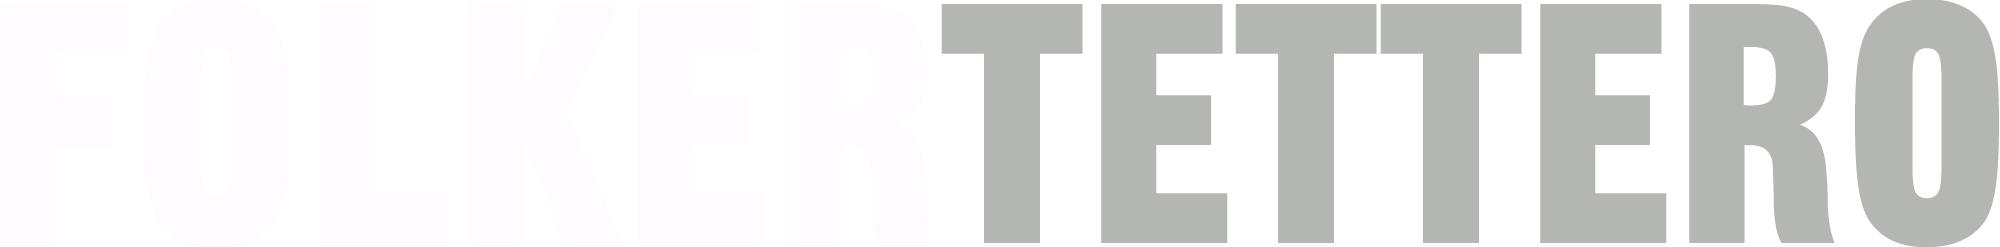 Folker Tettero logo